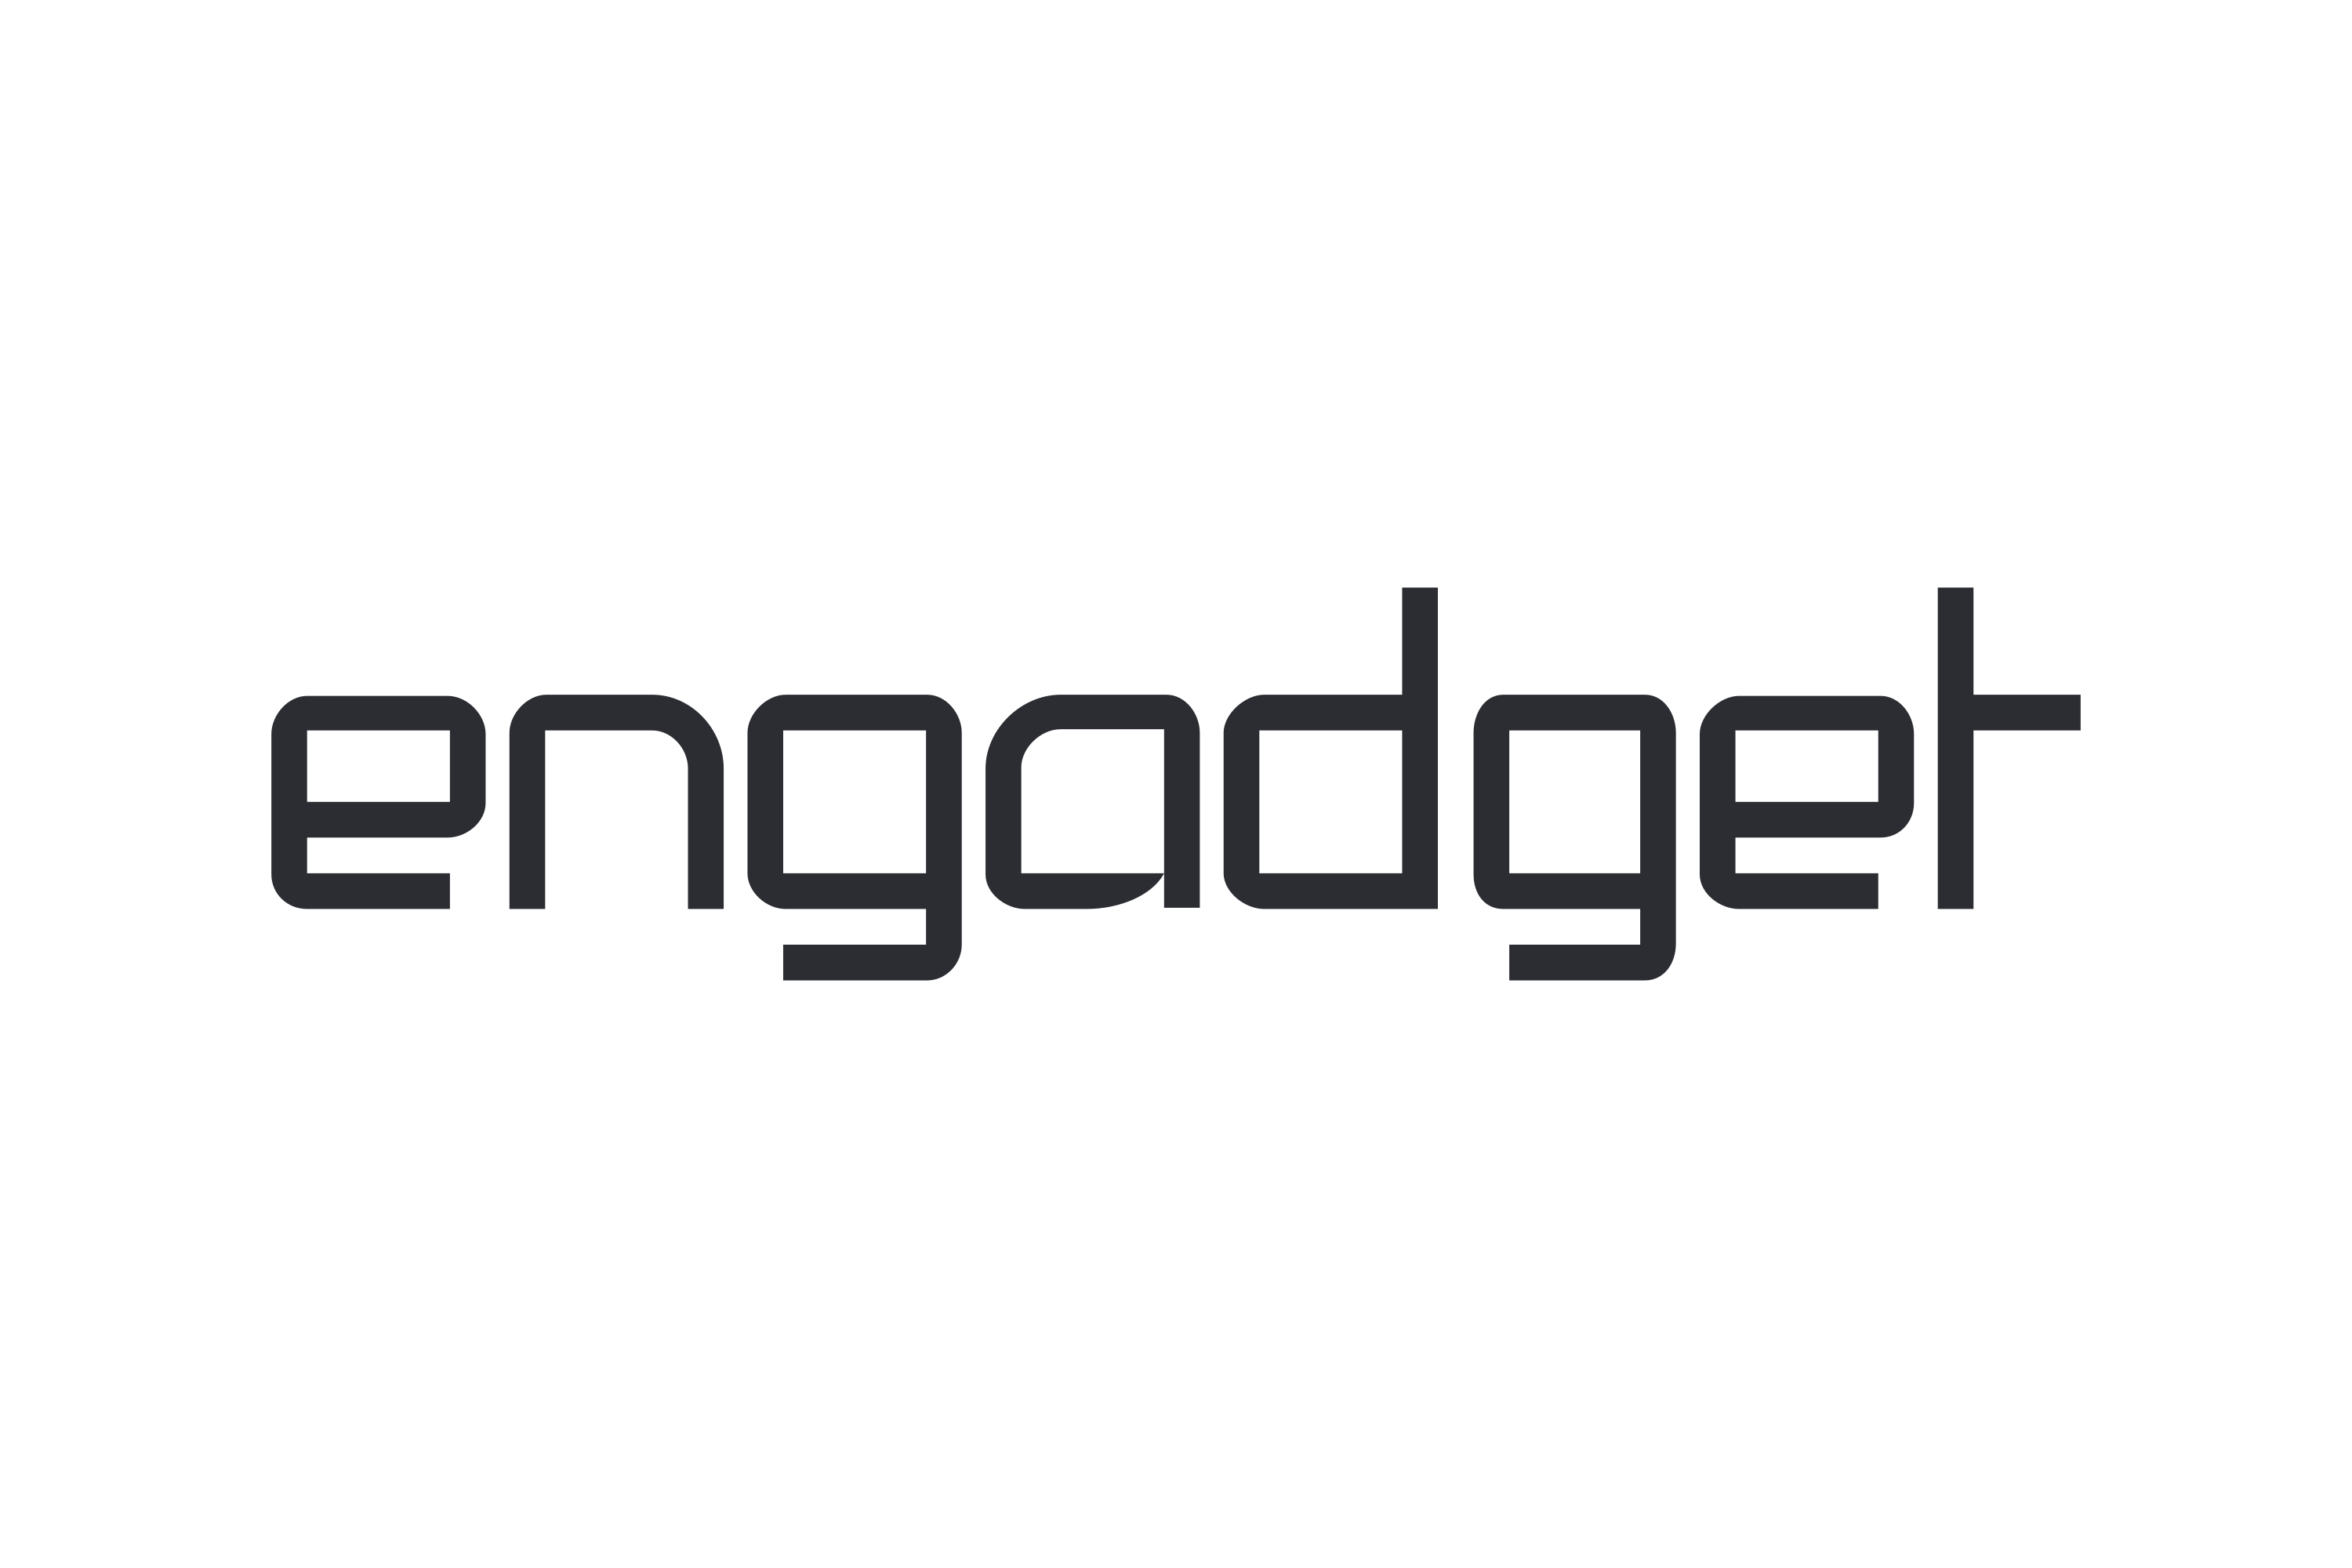 engadget.com 代理